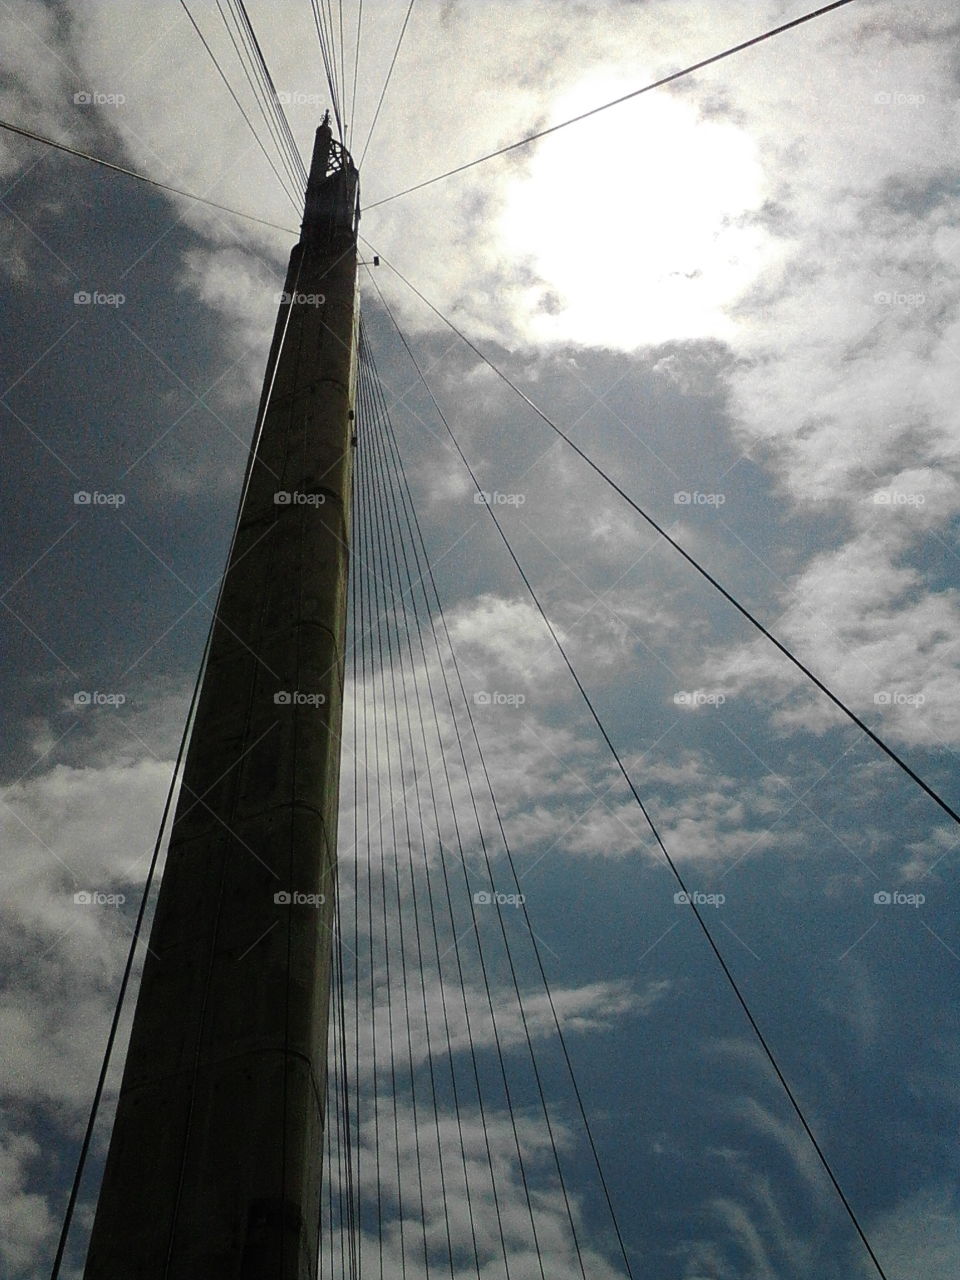 suspensions bridge tower